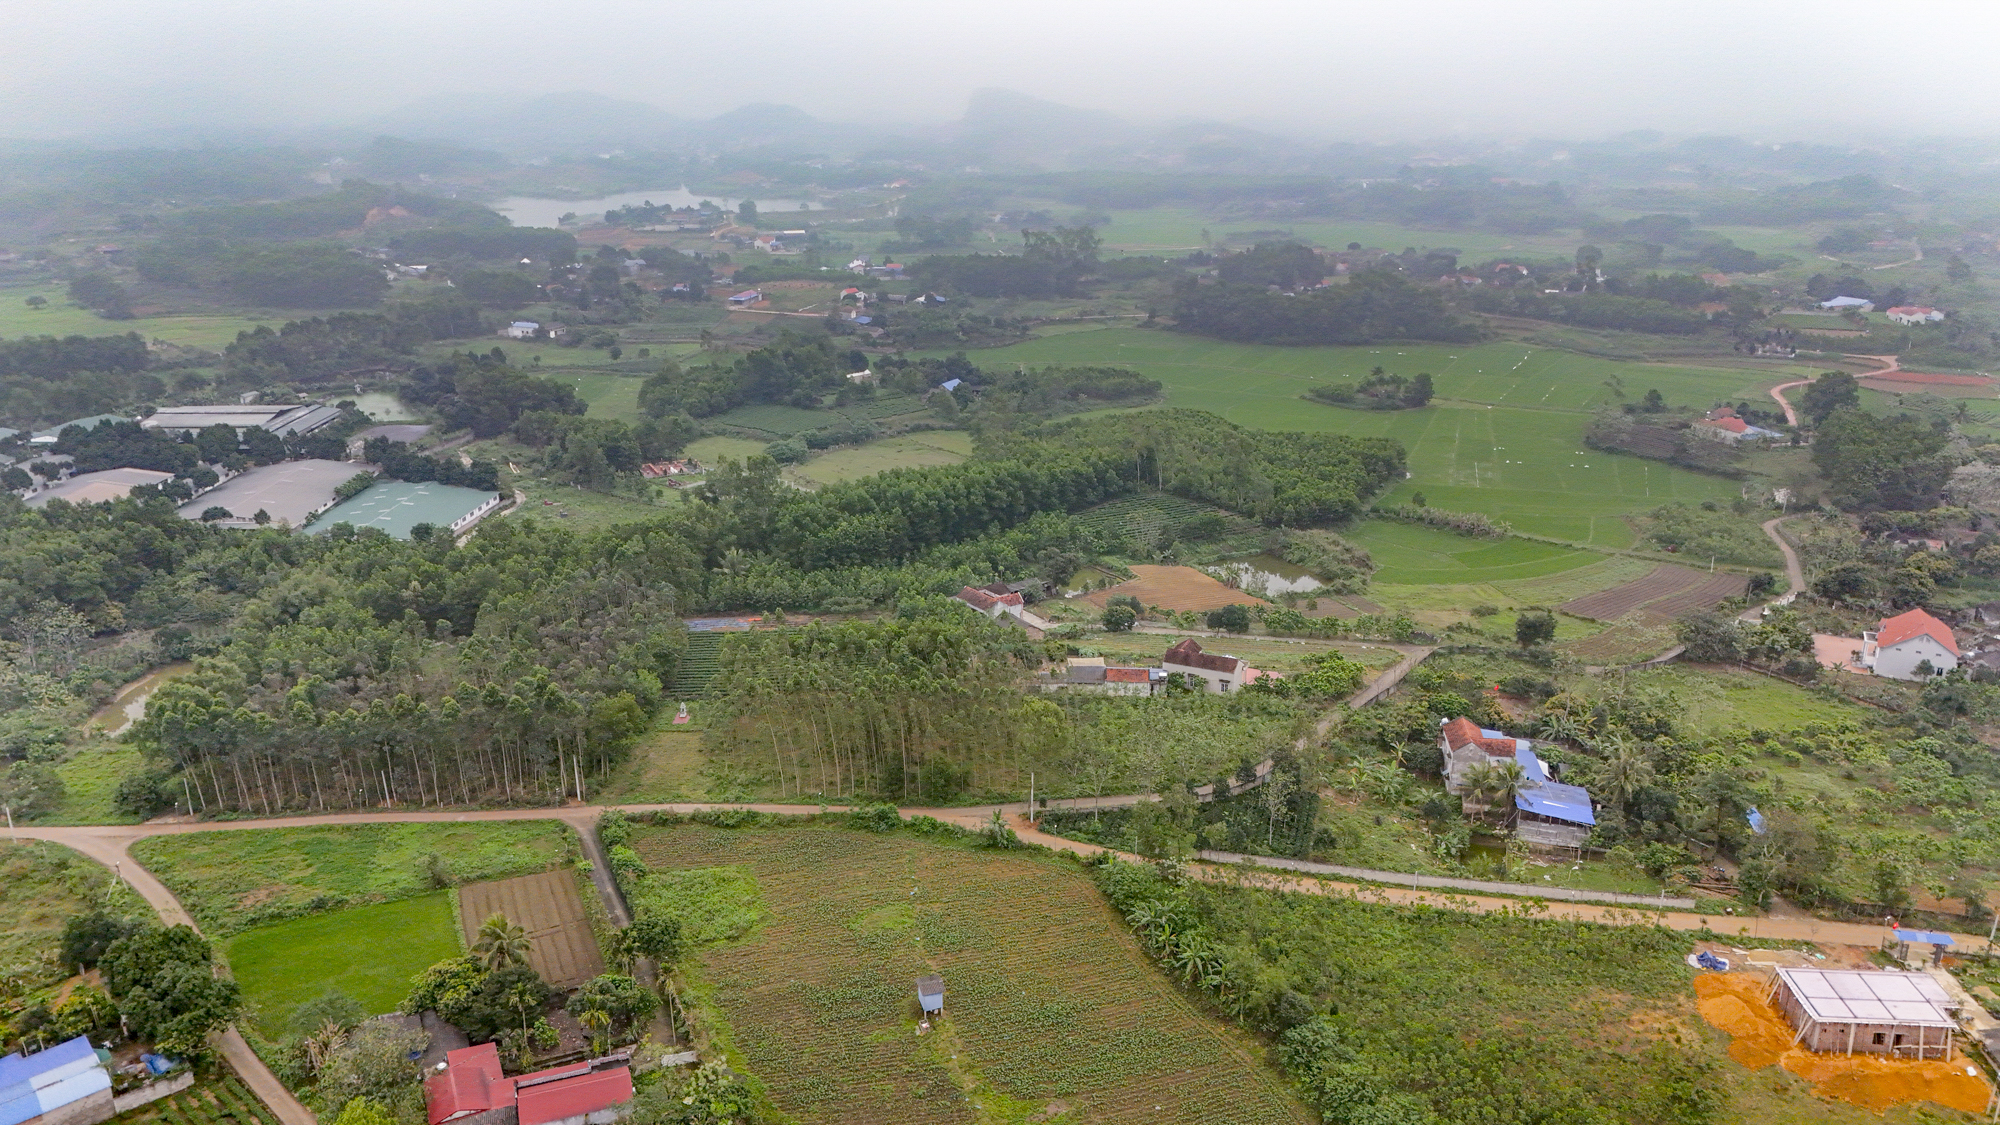 Khu vực sẽ trở thành Khu công nghiệp - Đô thị - Dịch vụ lớn nhất tỉnh Thái Nguyên, gần bằng tổng diện tích khu công nghiệp toàn tỉnh hiện nay cộng lại- Ảnh 7.